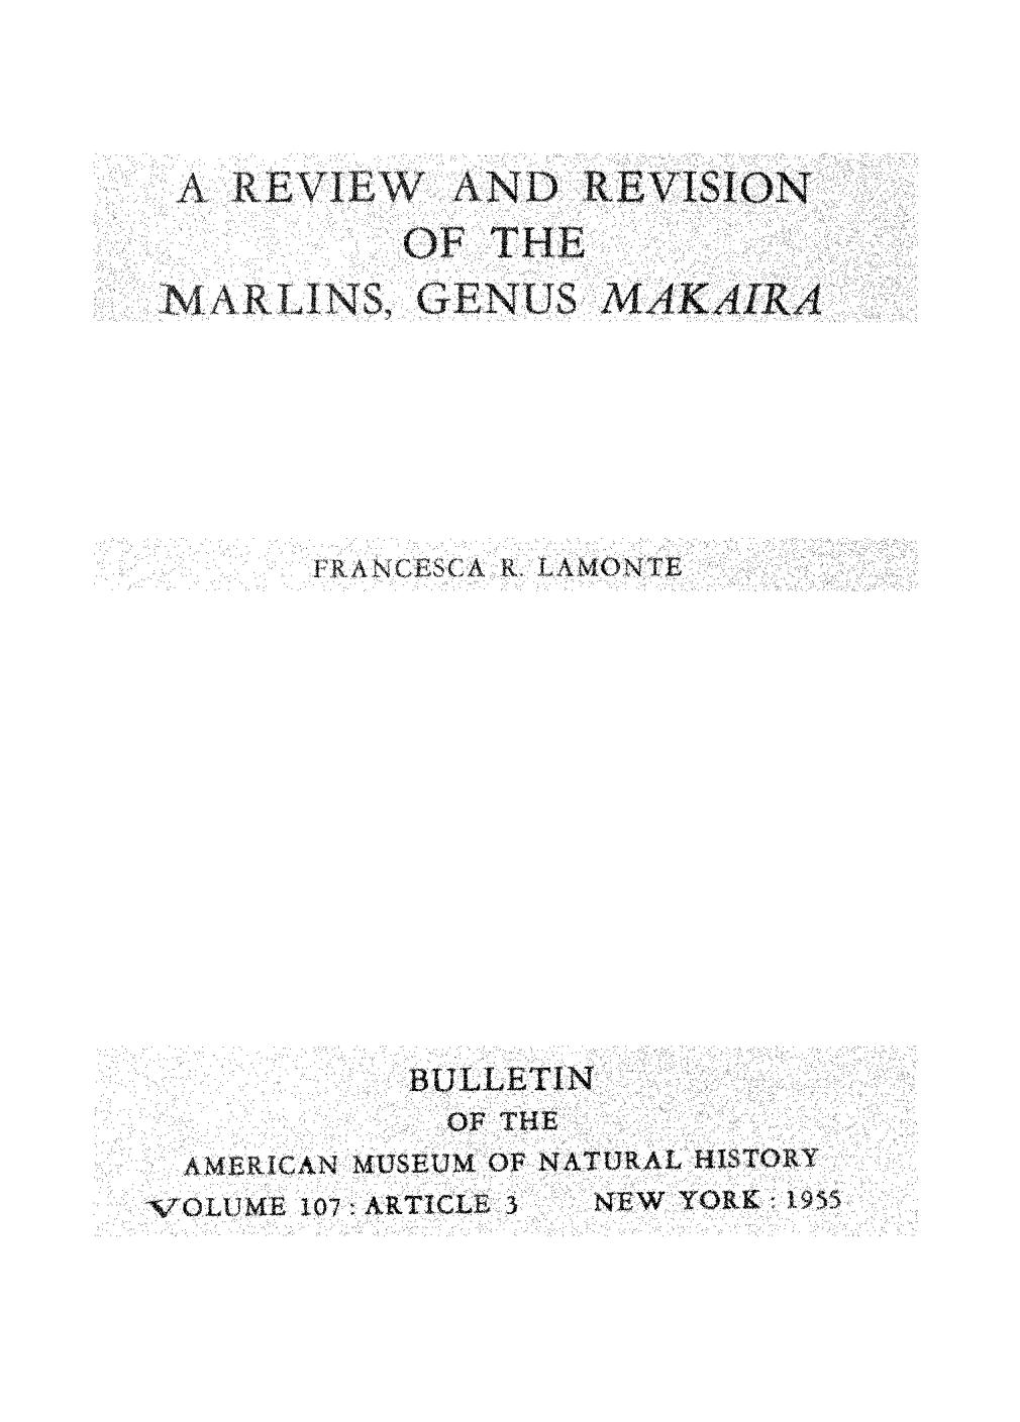 Of, the Narlins, Genus Makaira